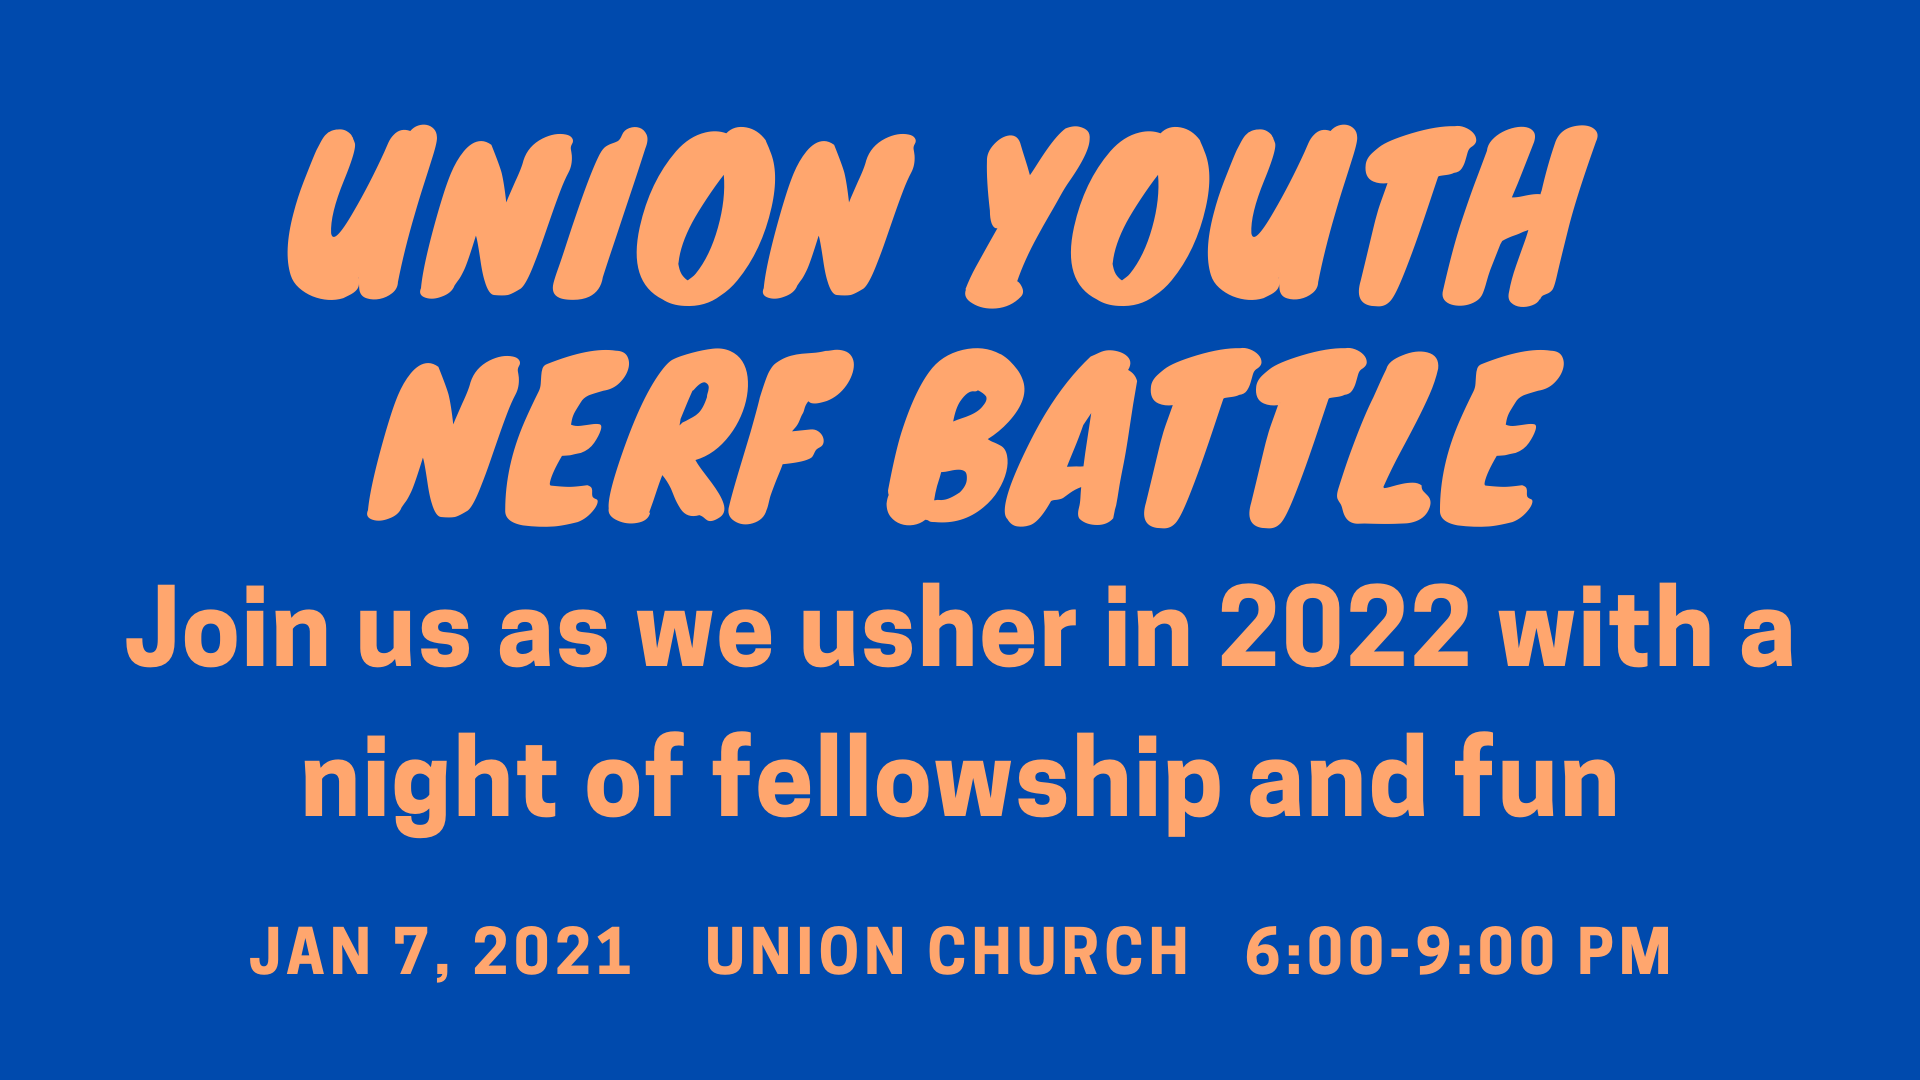 Union Youth NERF Battle